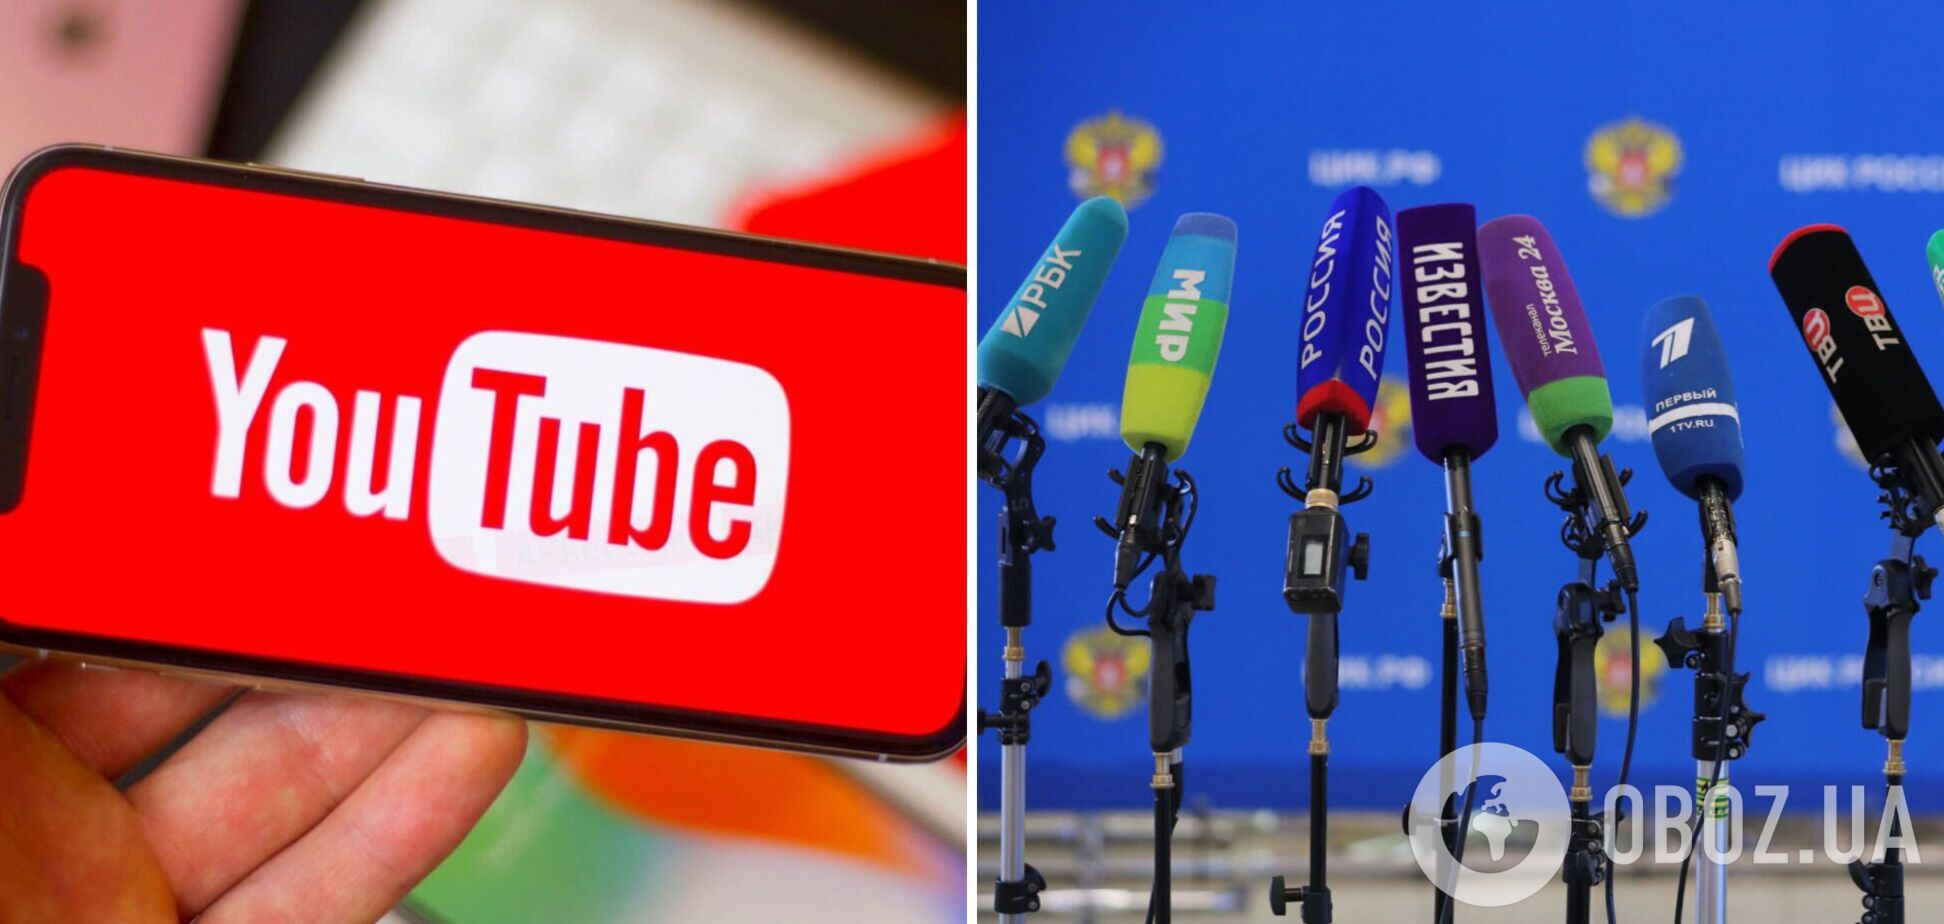 YouTube заблокирует каналы российских государственных медиа по всему миру